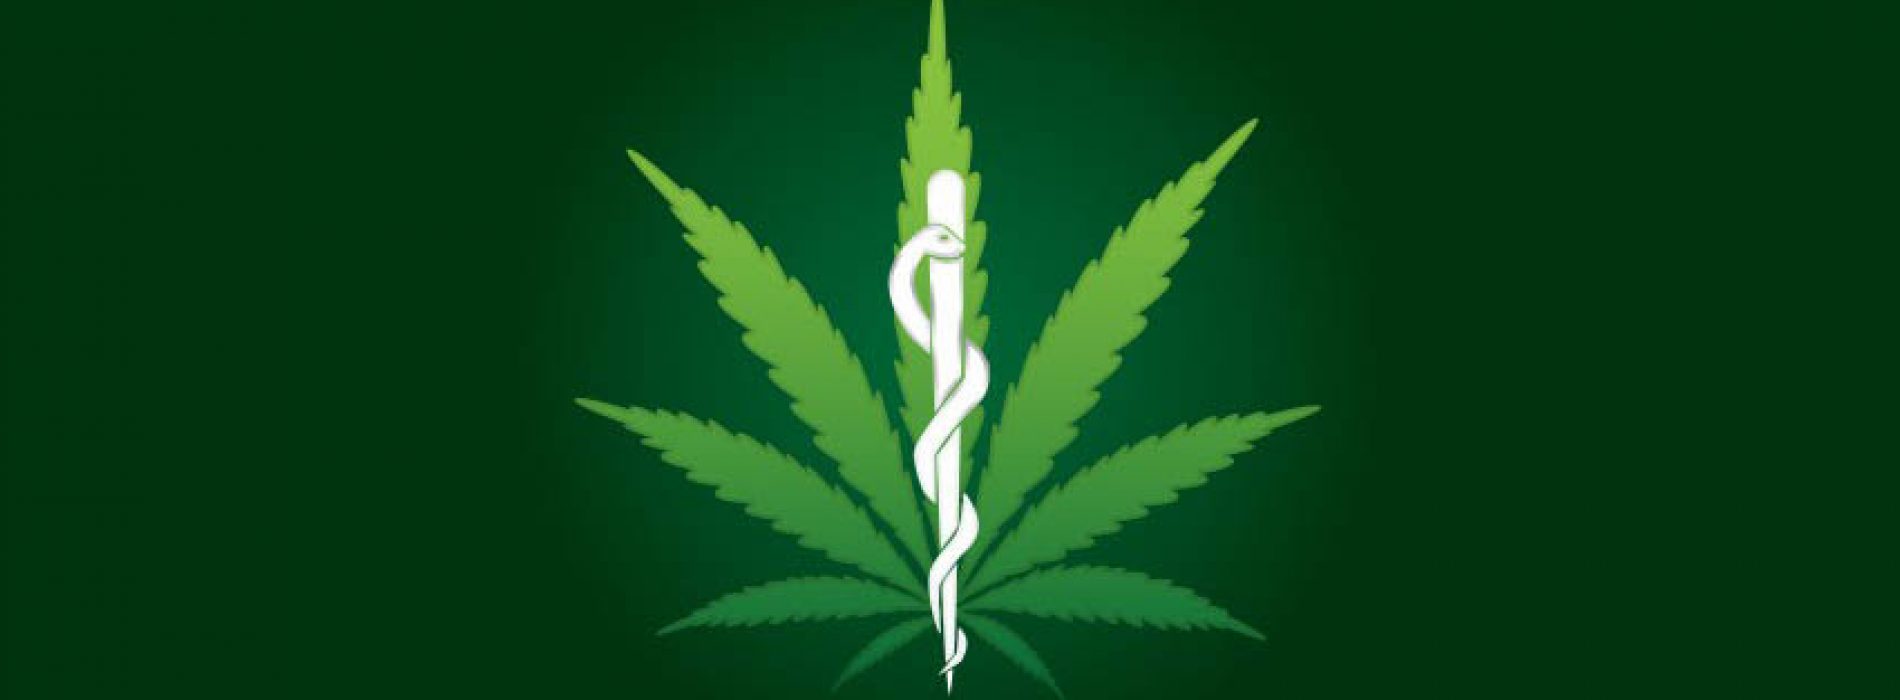 Bestanddeel van cannabis in Groot-Brittannië erkend als medicijn